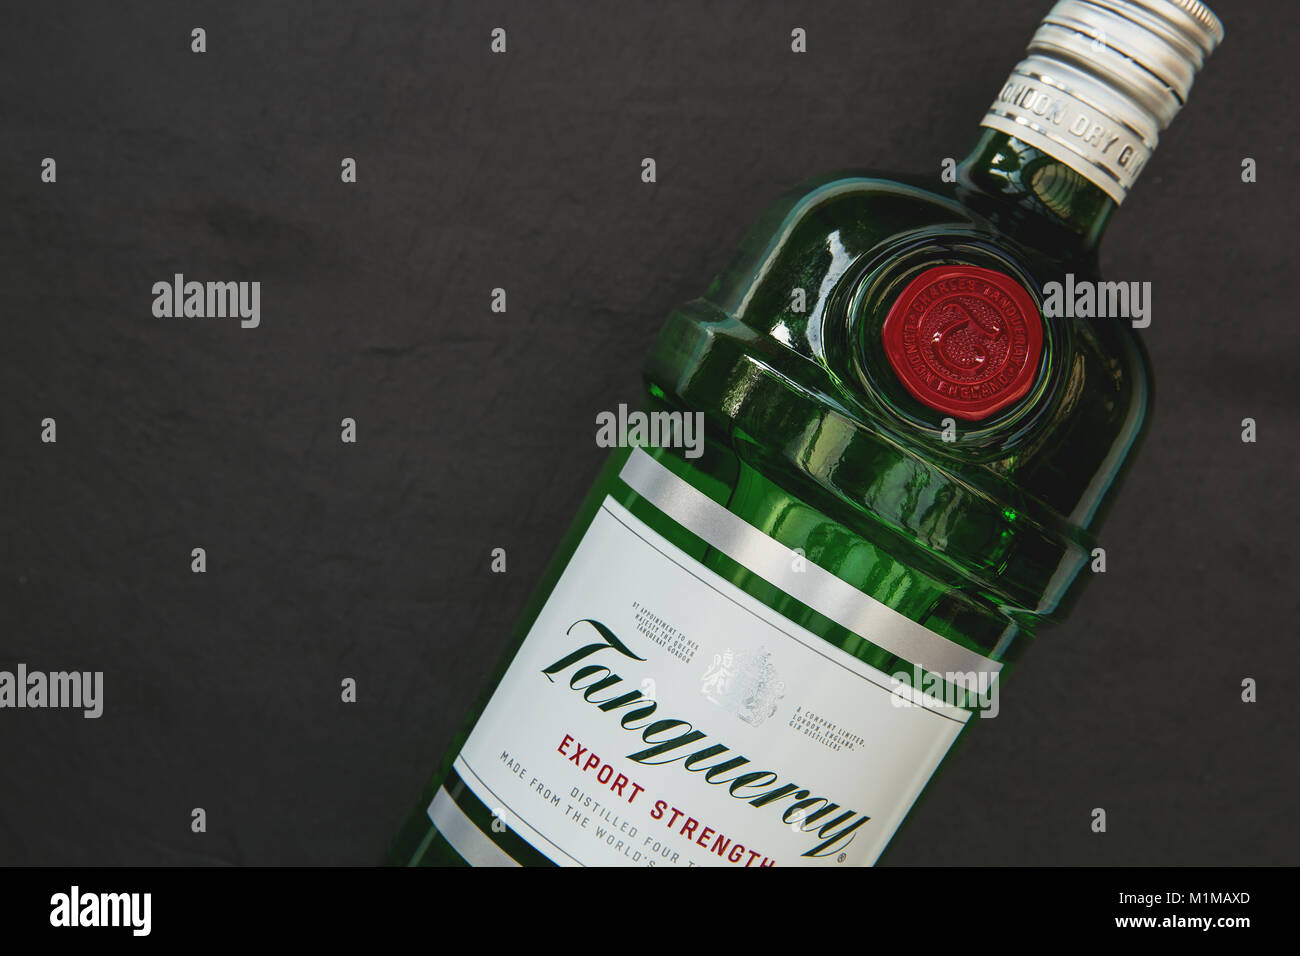 Londres - 30 janvier 2018 : Tanqueray gin dans le flacon en verre avec logo  sur fond sombre Photo Stock - Alamy